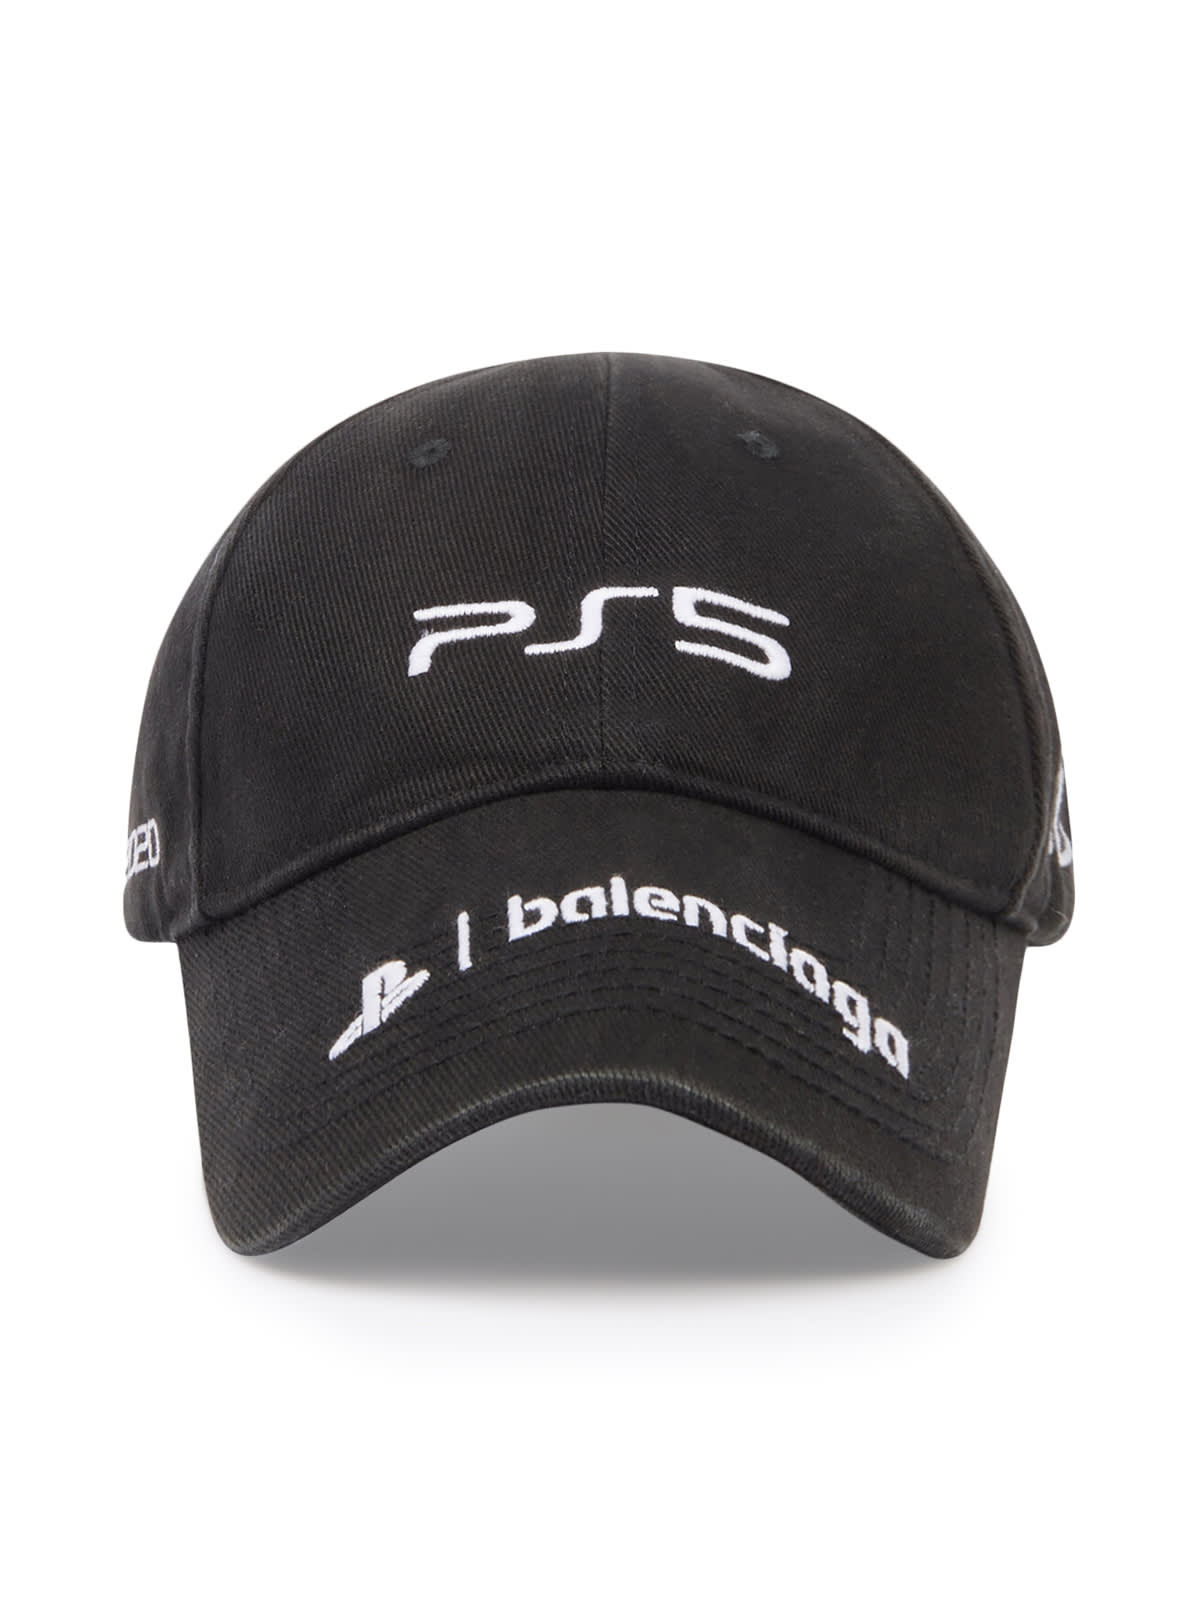 Balenciaga Hat Ps5 Cap Bio